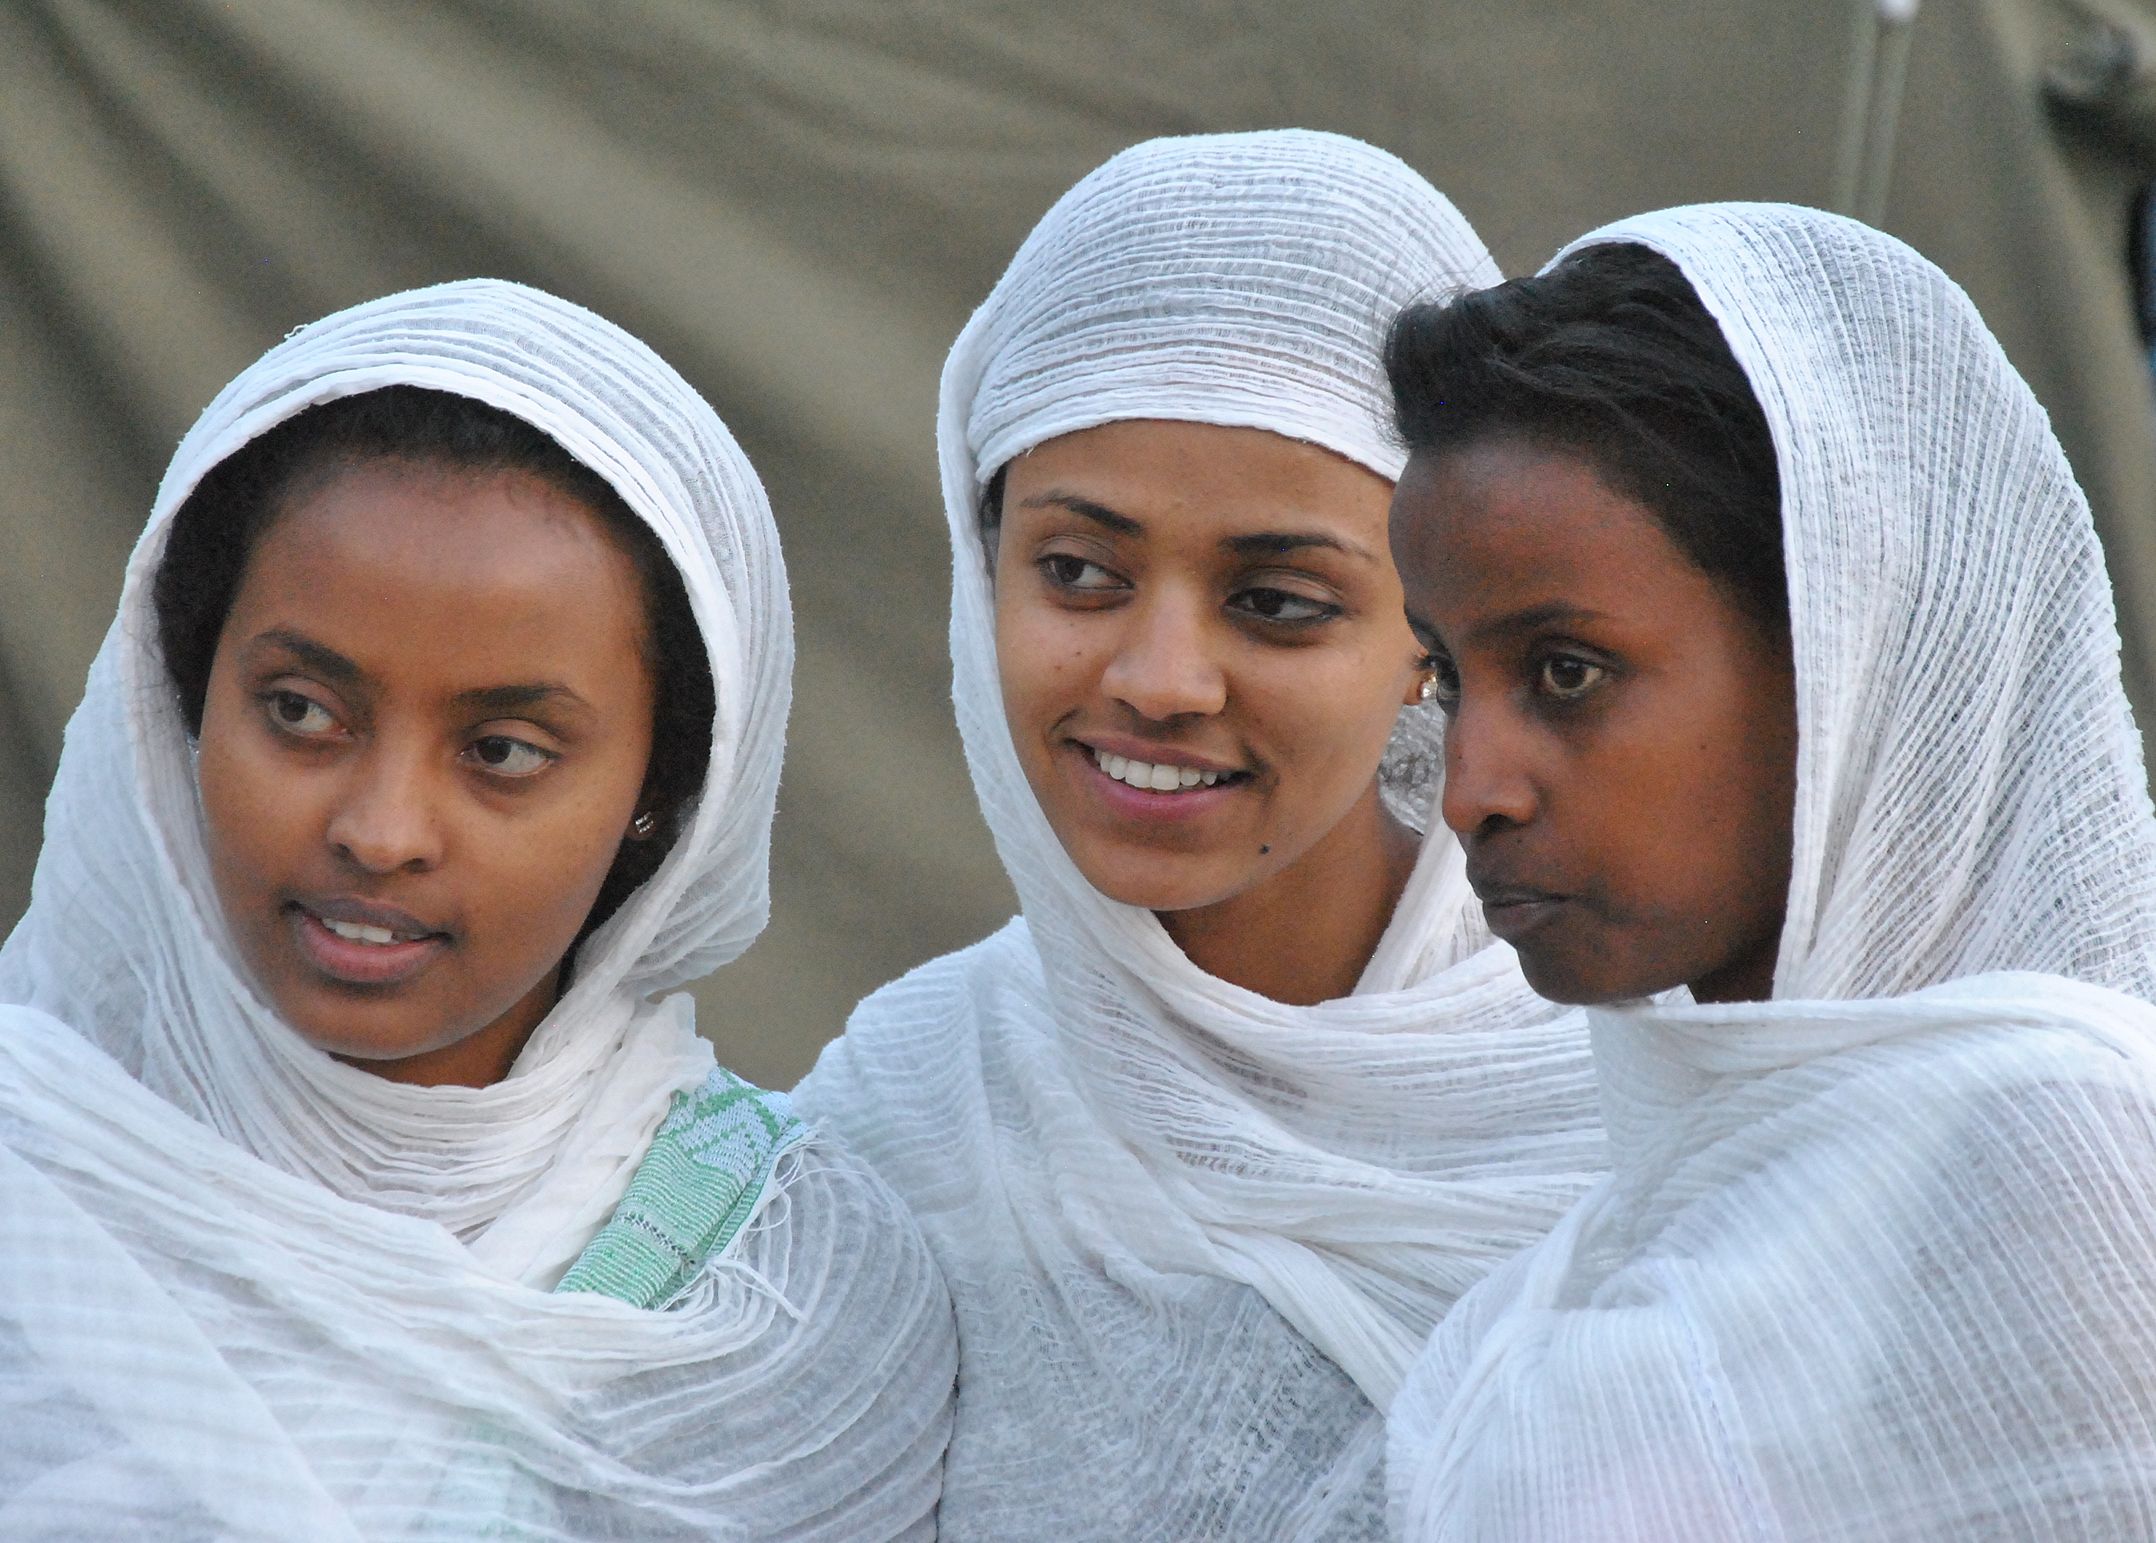 Erleben von äthiopischer Kultur und Projektarbeit